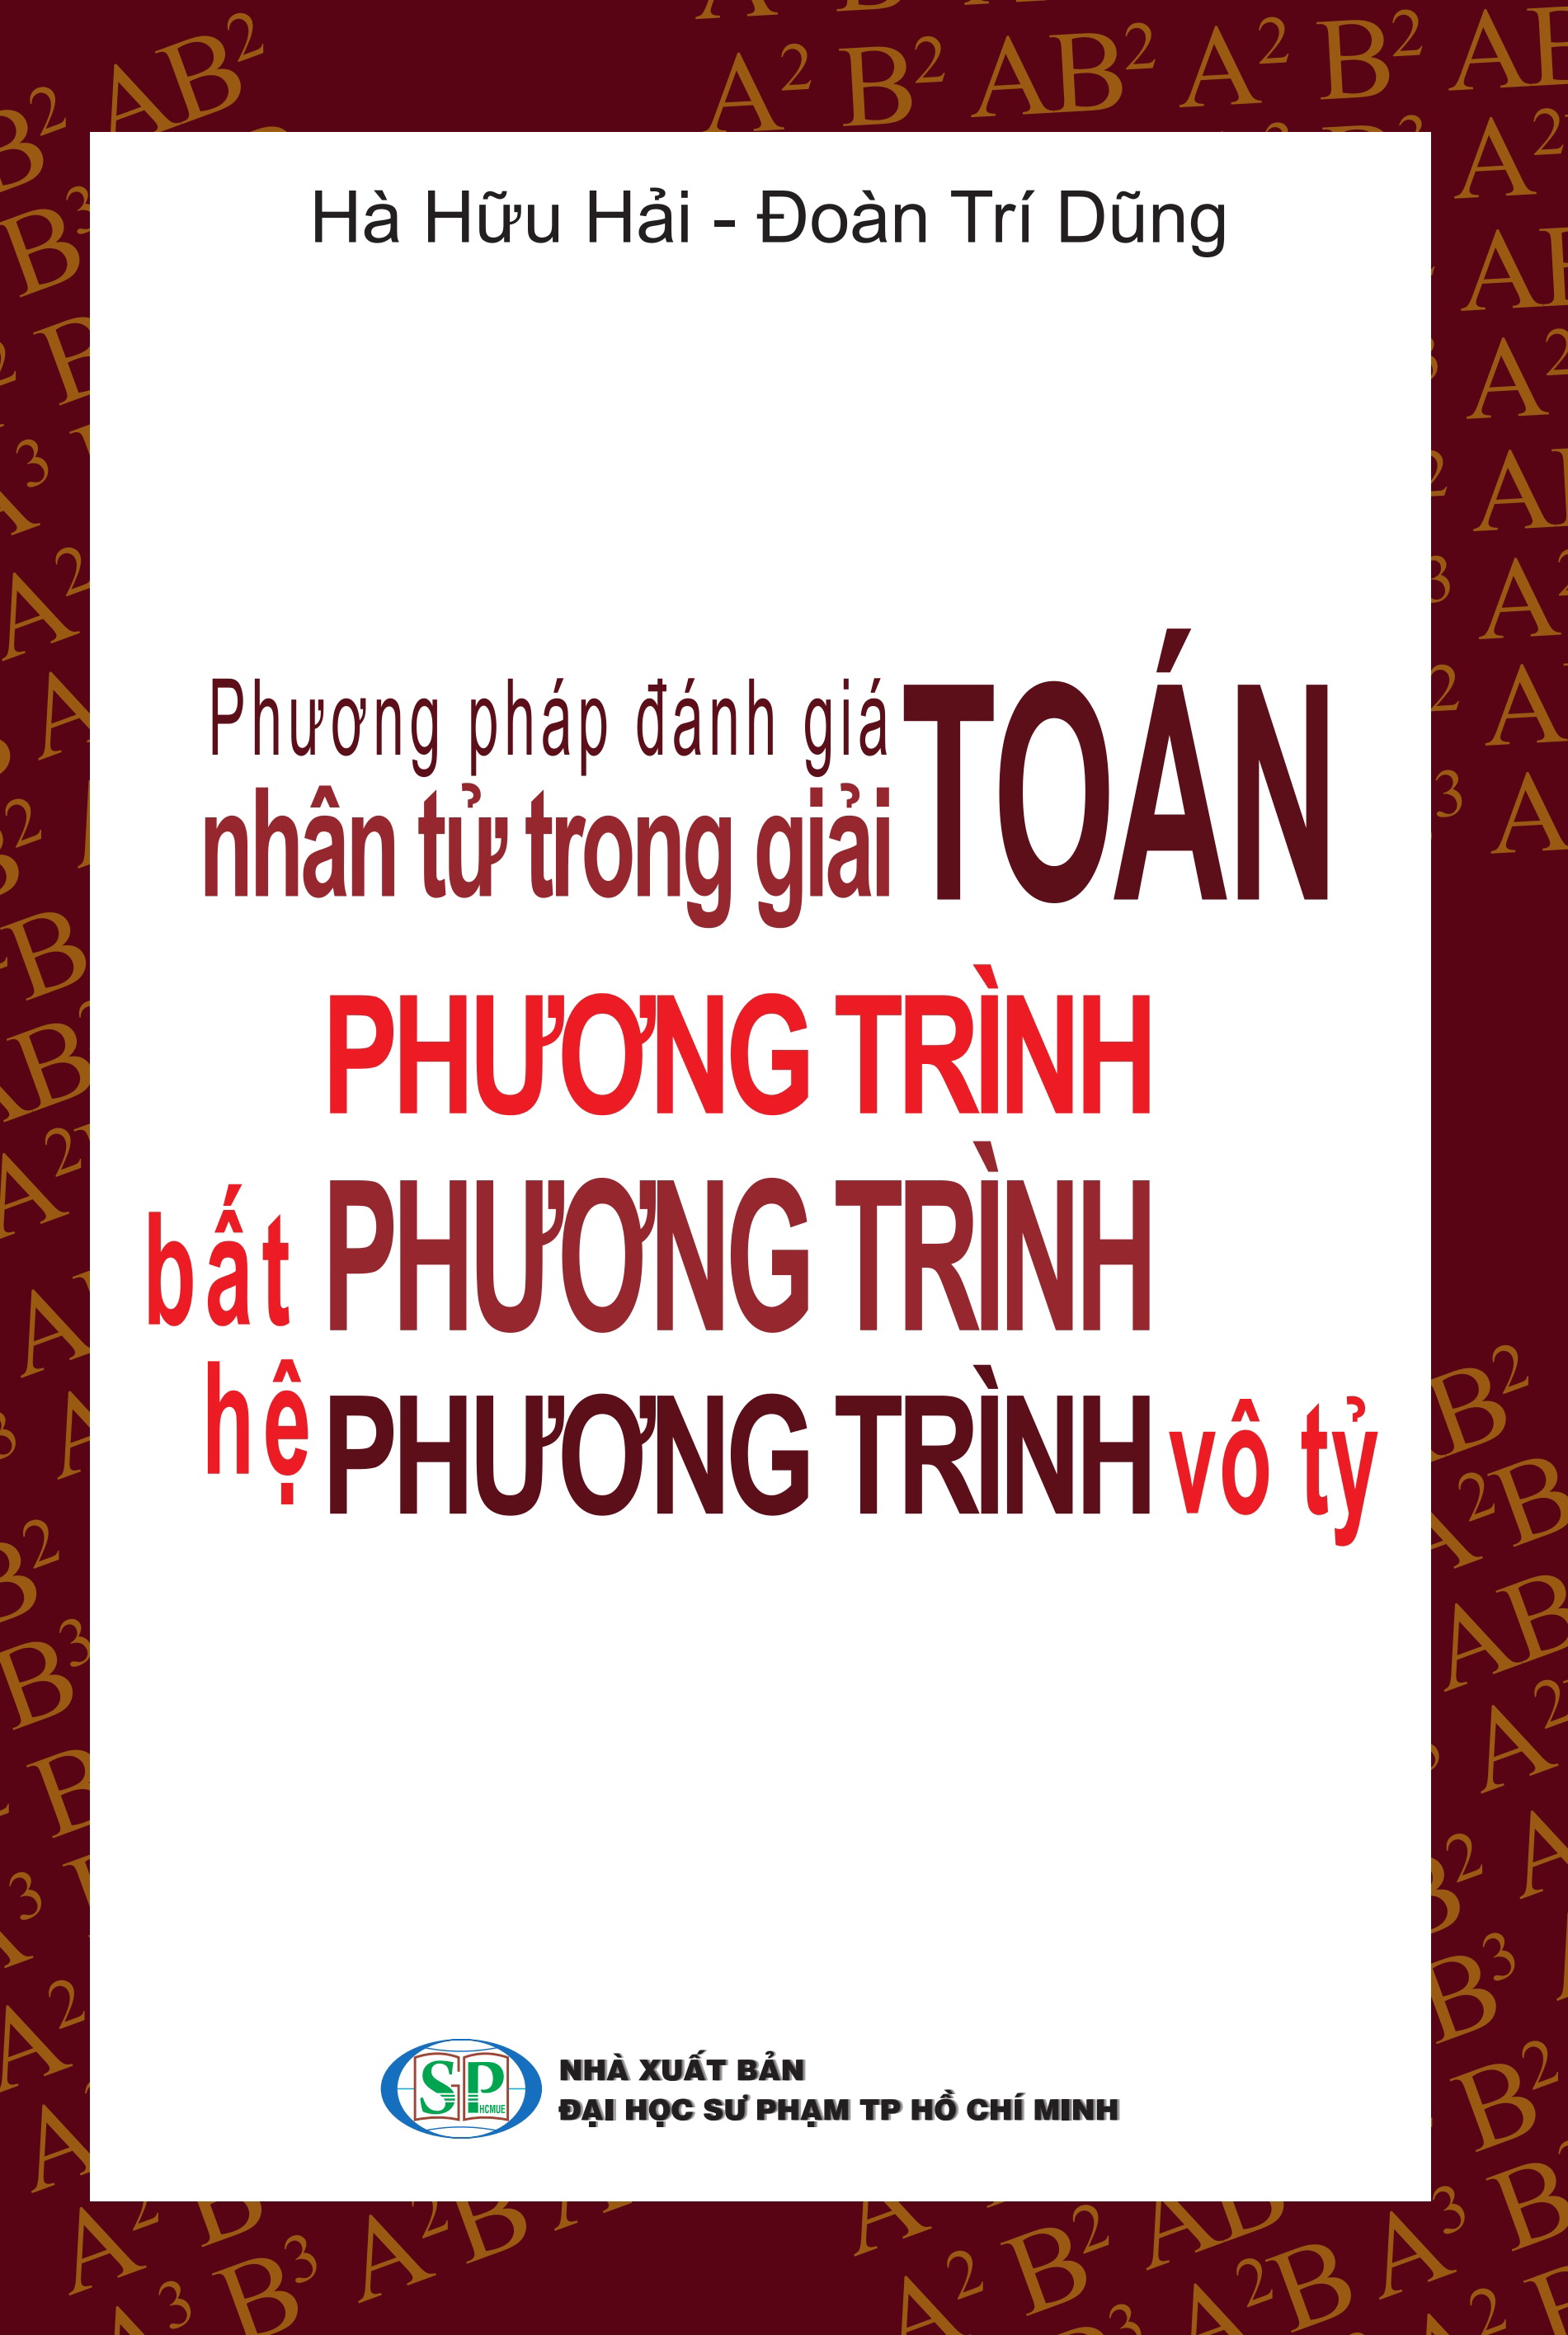 phuong-phap-danh-gia-nhan-tu-trong-giai-toan-phuong-trinh-bat-phuong-trinh-he-phuong-trinh-vo-ty-